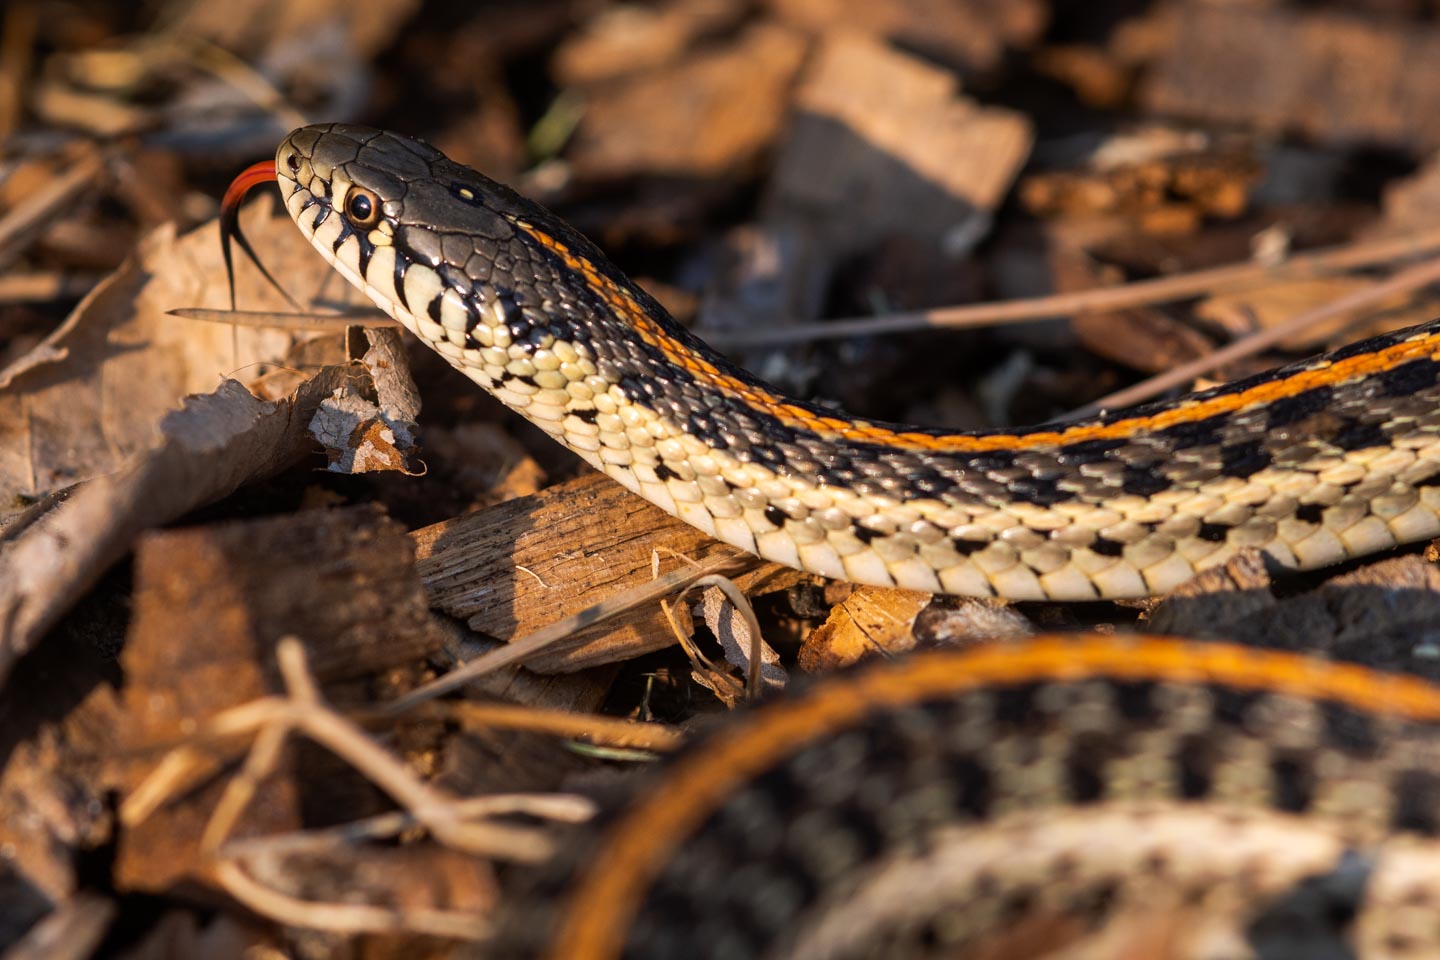 Read More: Snakes of Nebraska